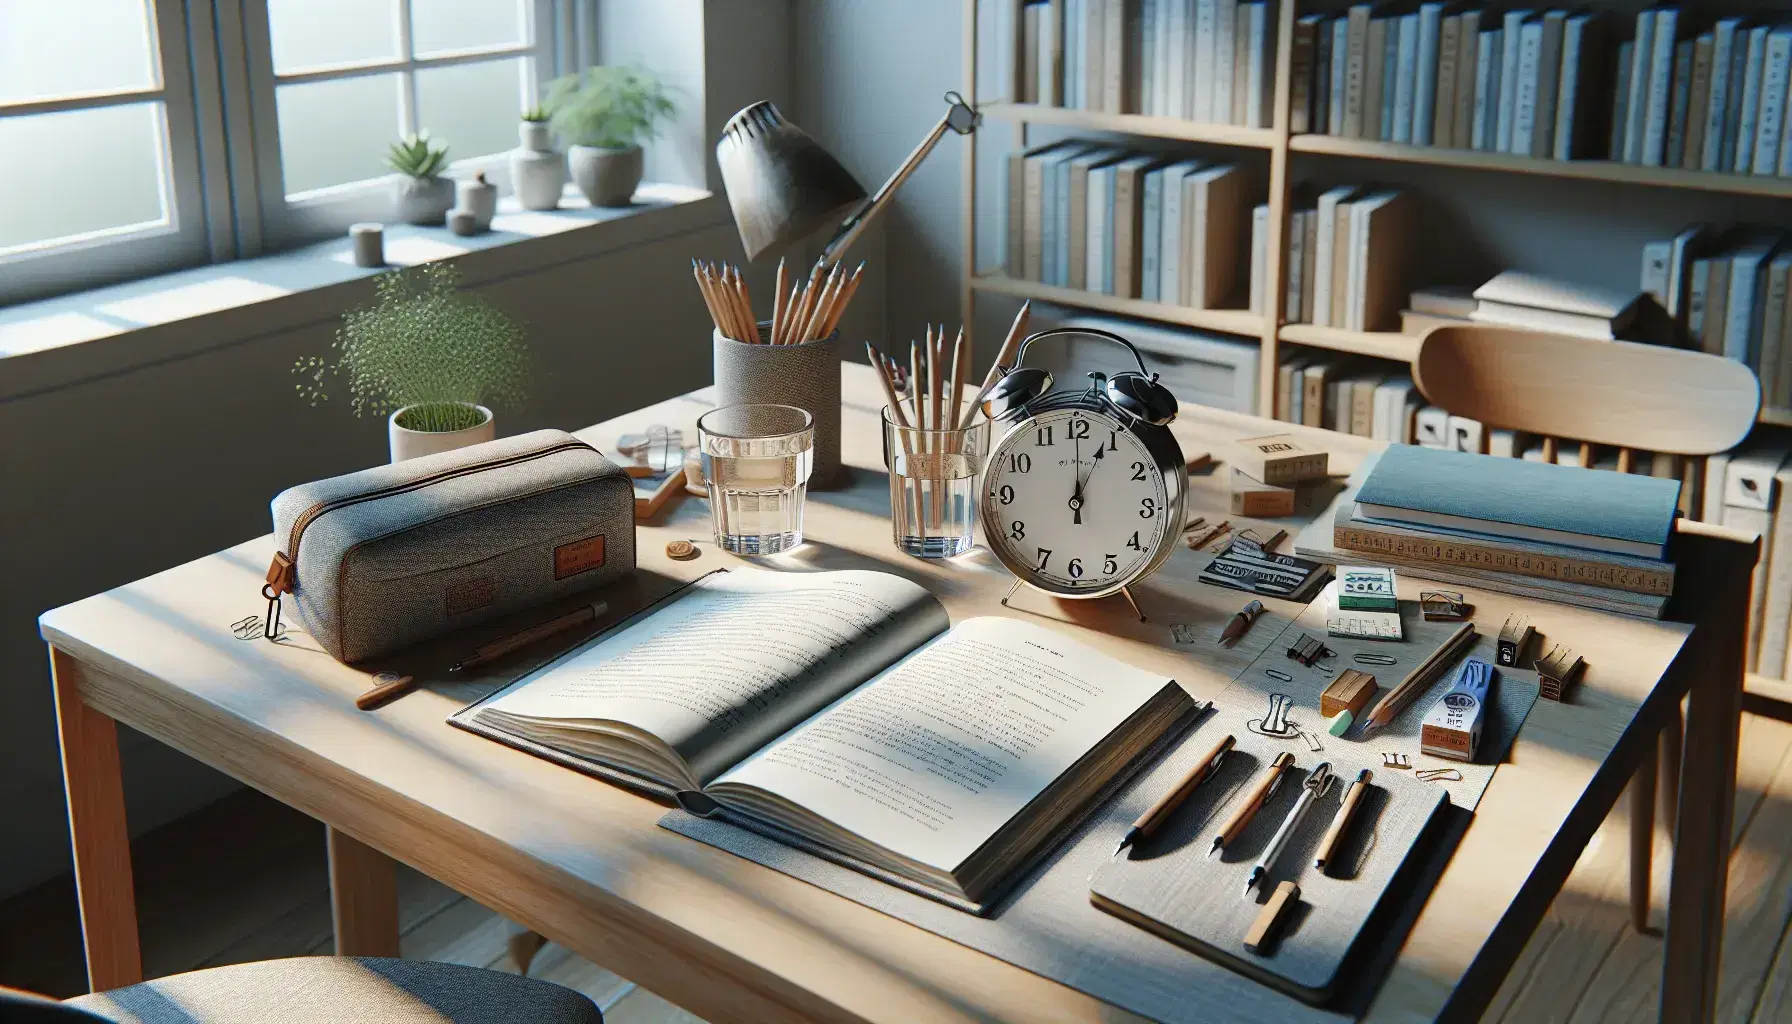 Mesa de estudio de madera clara con libro abierto, cuaderno azul, estuche de lápices gris, reloj analógico, vaso de agua y planta verde, iluminada por luz natural.